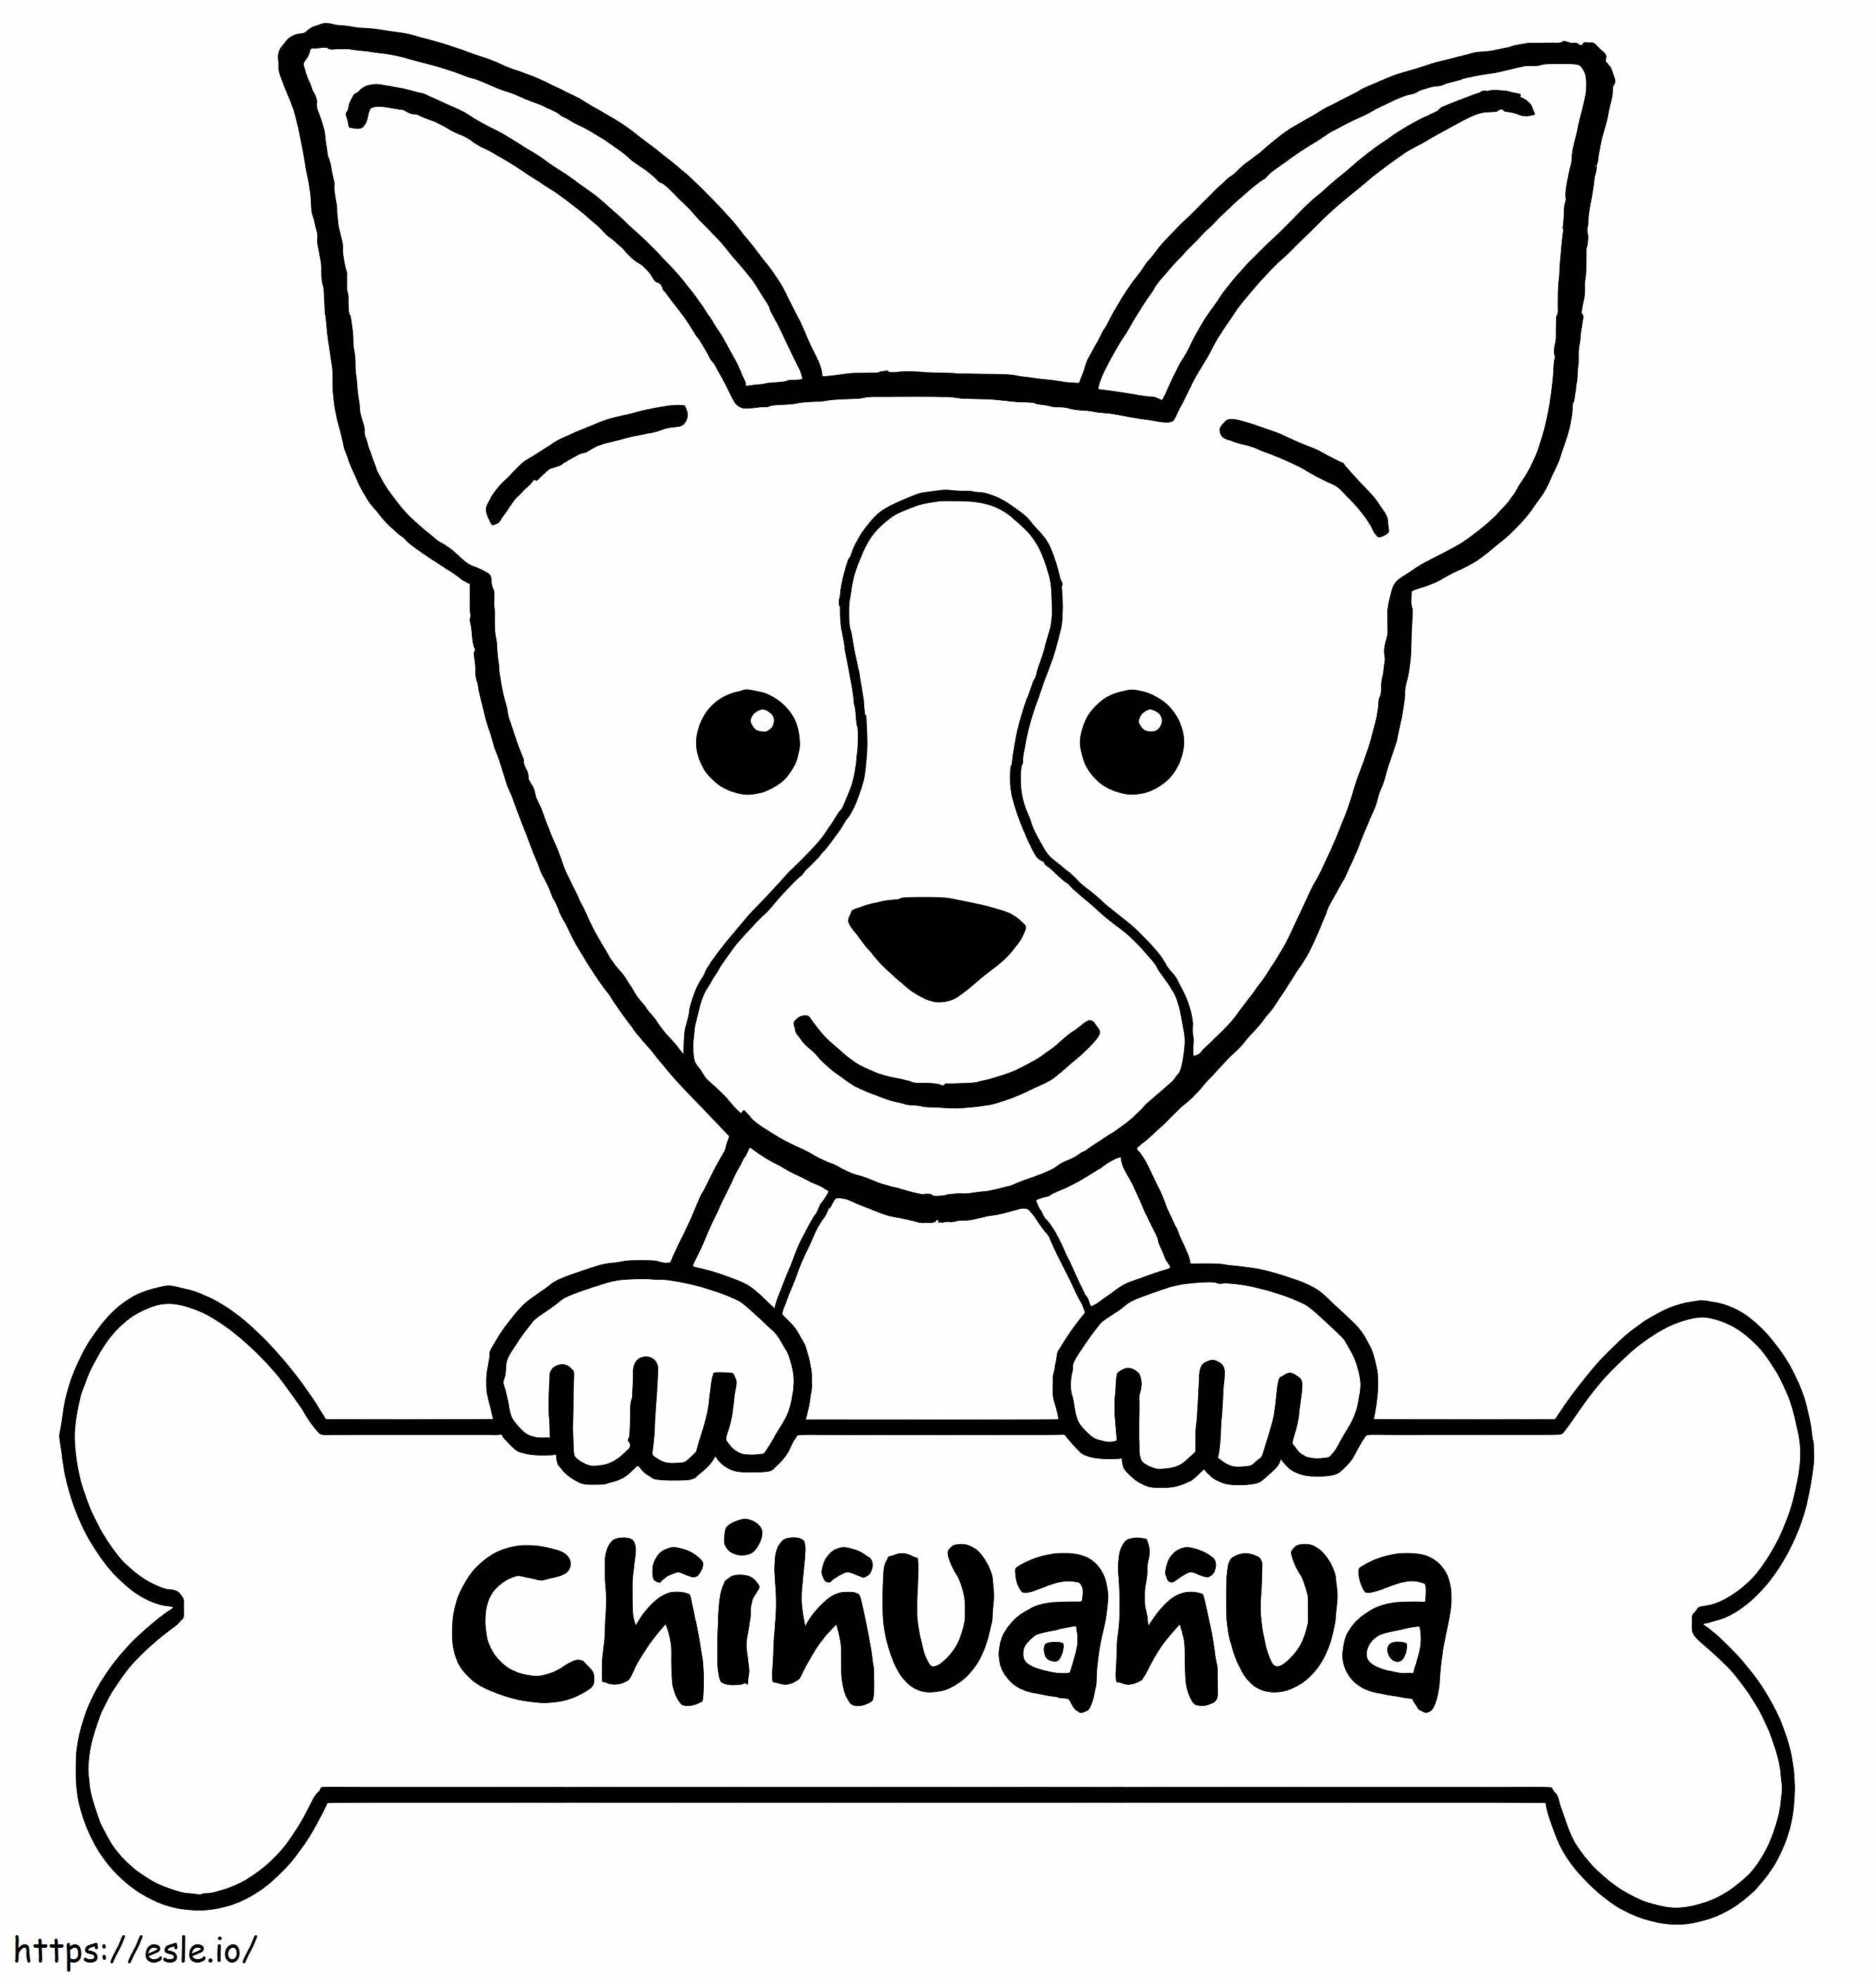 Chihuahua e osso da colorare